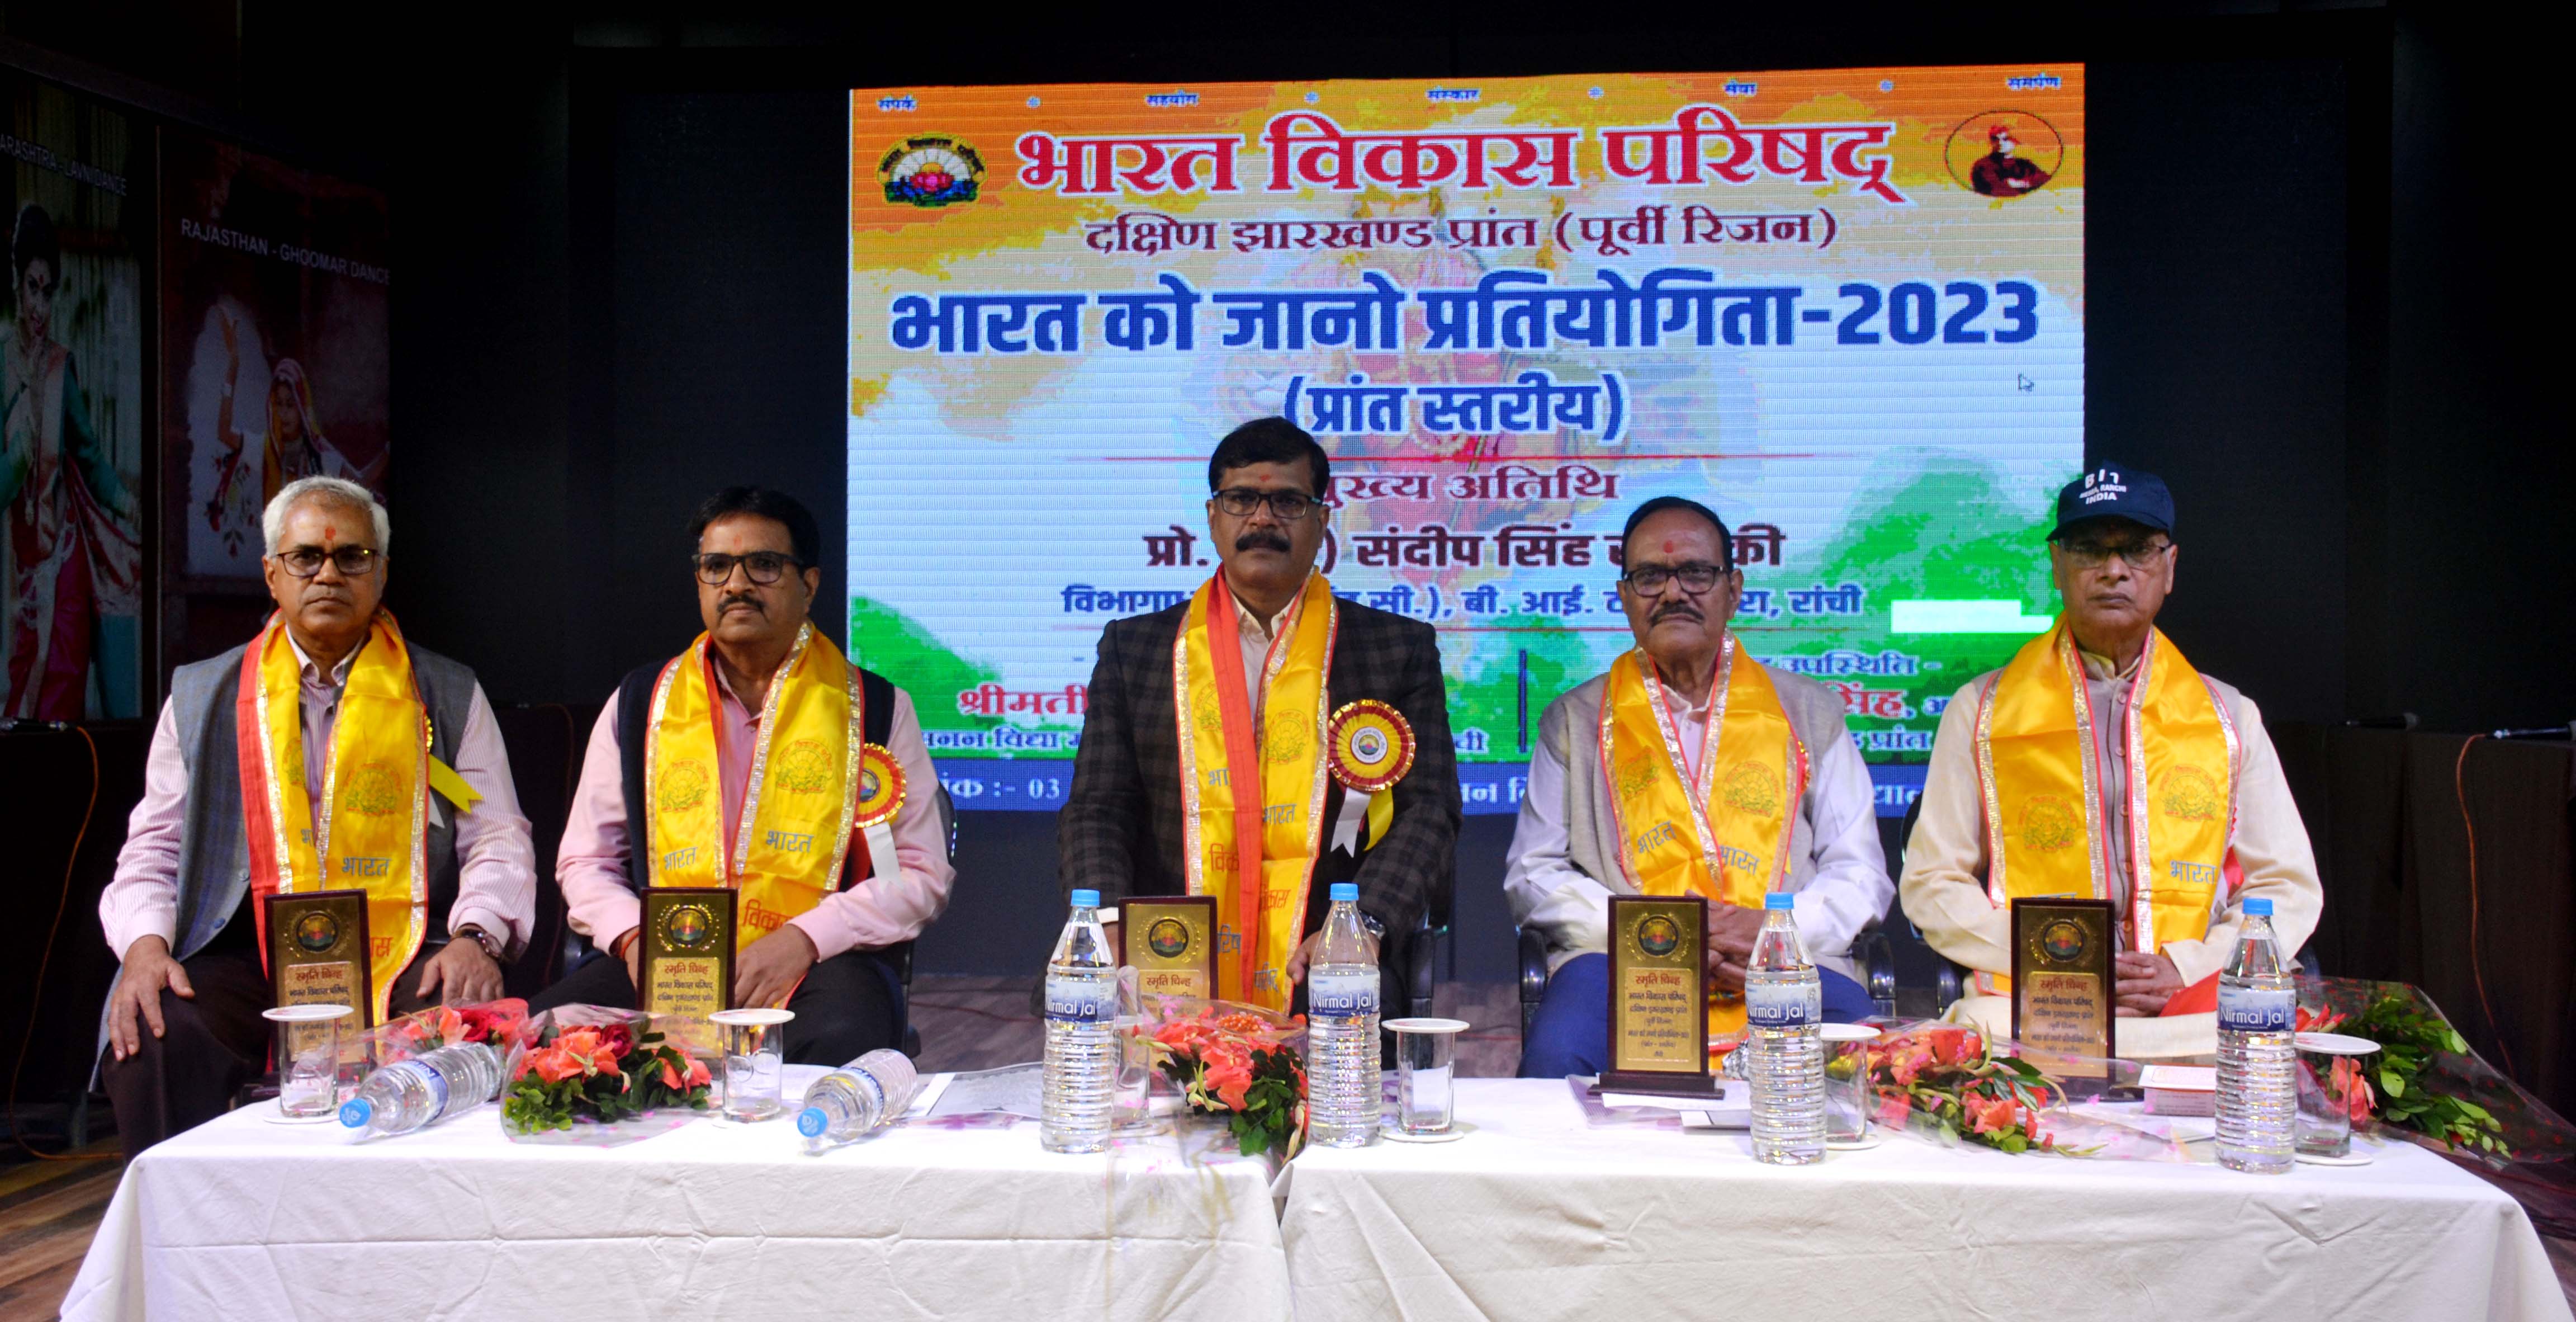 भारत विकास परिषद के दक्षिण झारखंड प्रांत का प्रांत स्तरीय “भारत को जानो प्रतियोगिता -2023“